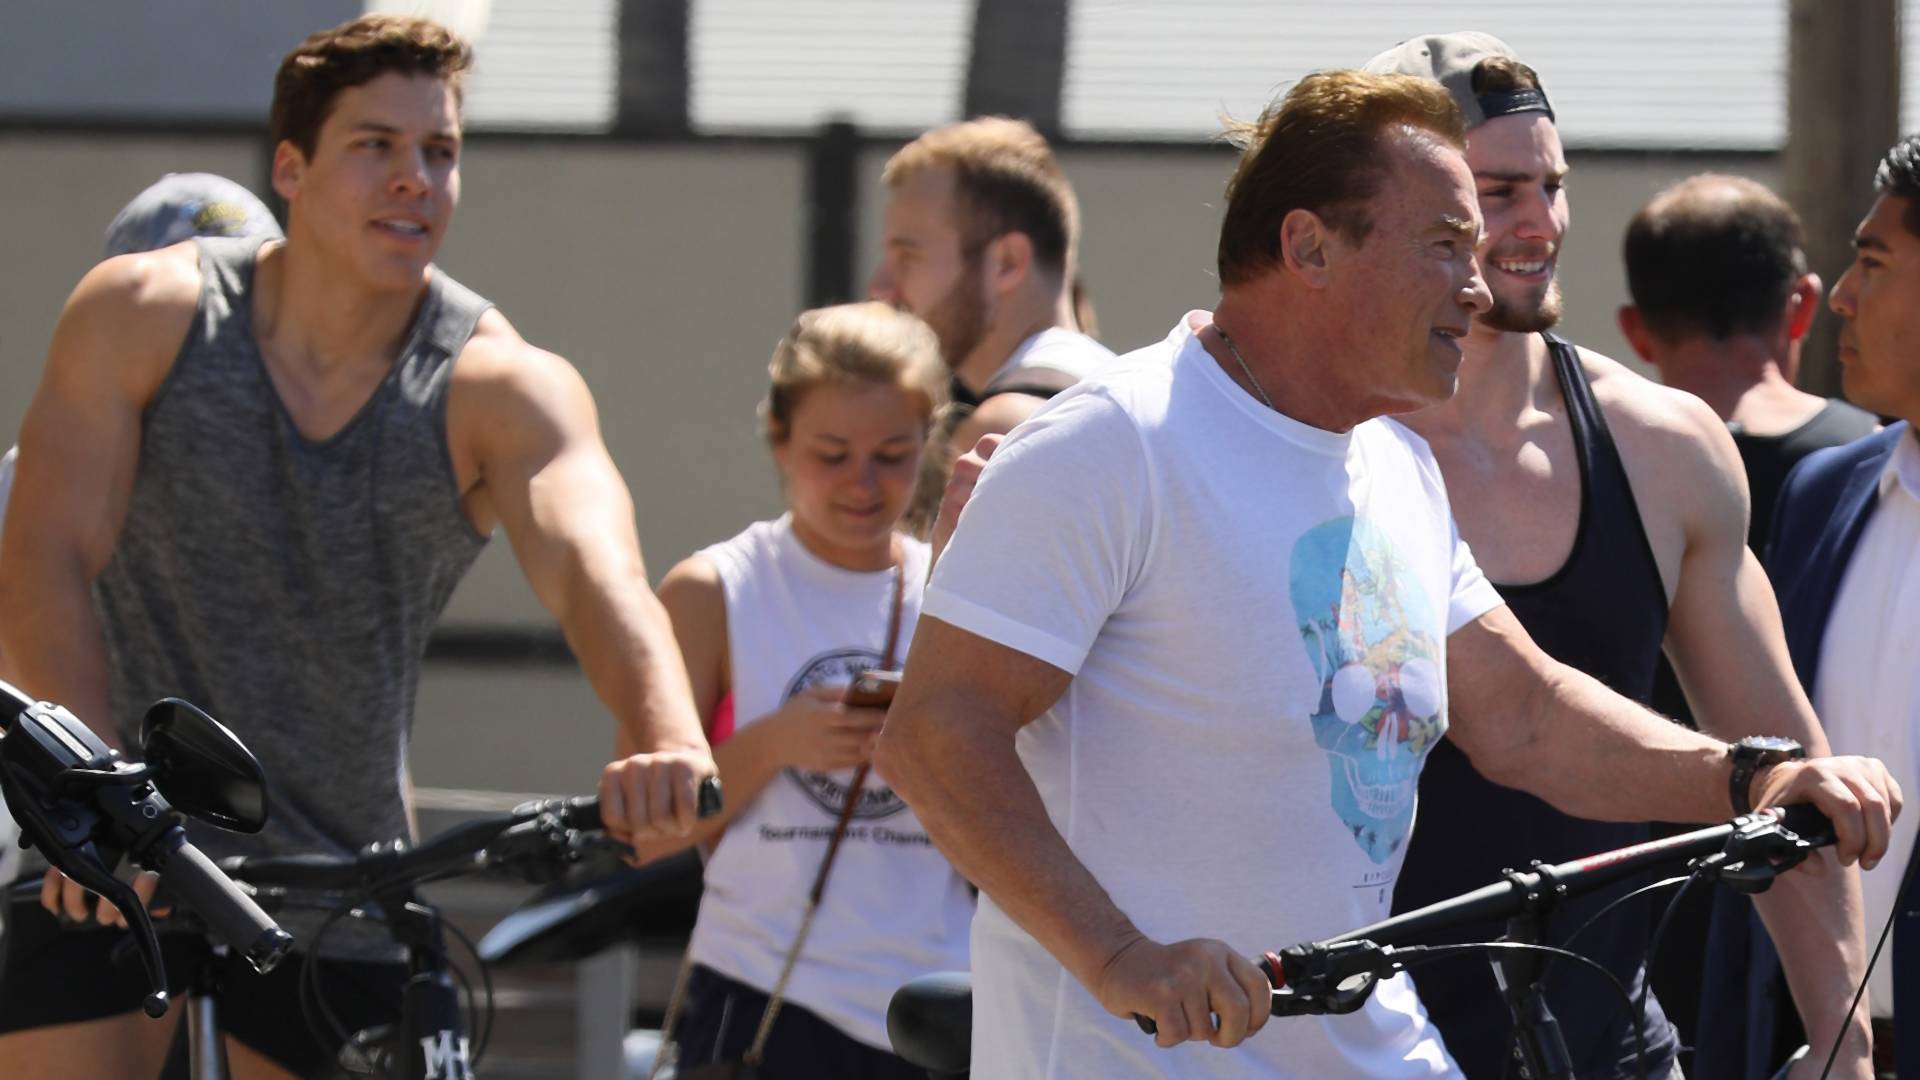 Arnold Schwarzeneggert lassan lekörözi a fia - képek